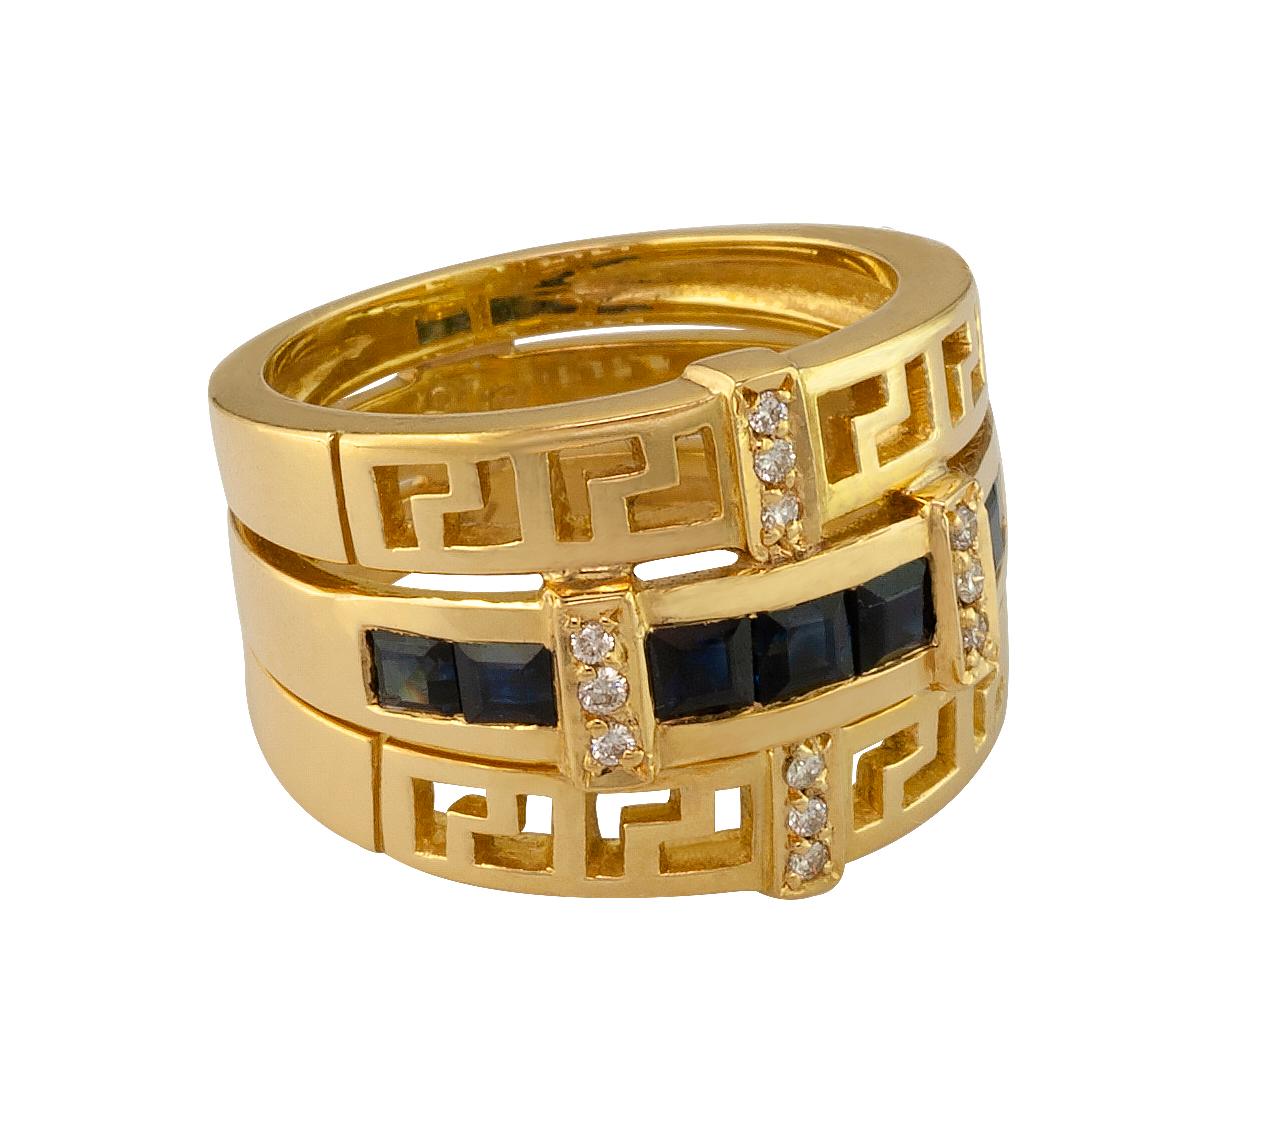 Der S.Georgios Designer-Ring aus 18 Karat Gelbgold ist mit einem griechischen Schlüssel versehen, der die Ewigkeit symbolisiert. Das wunderschöne Band hat 12 weiße Diamanten im Brillantschliff mit einem Gesamtgewicht von 0,11 Karat und 7 Diamanten